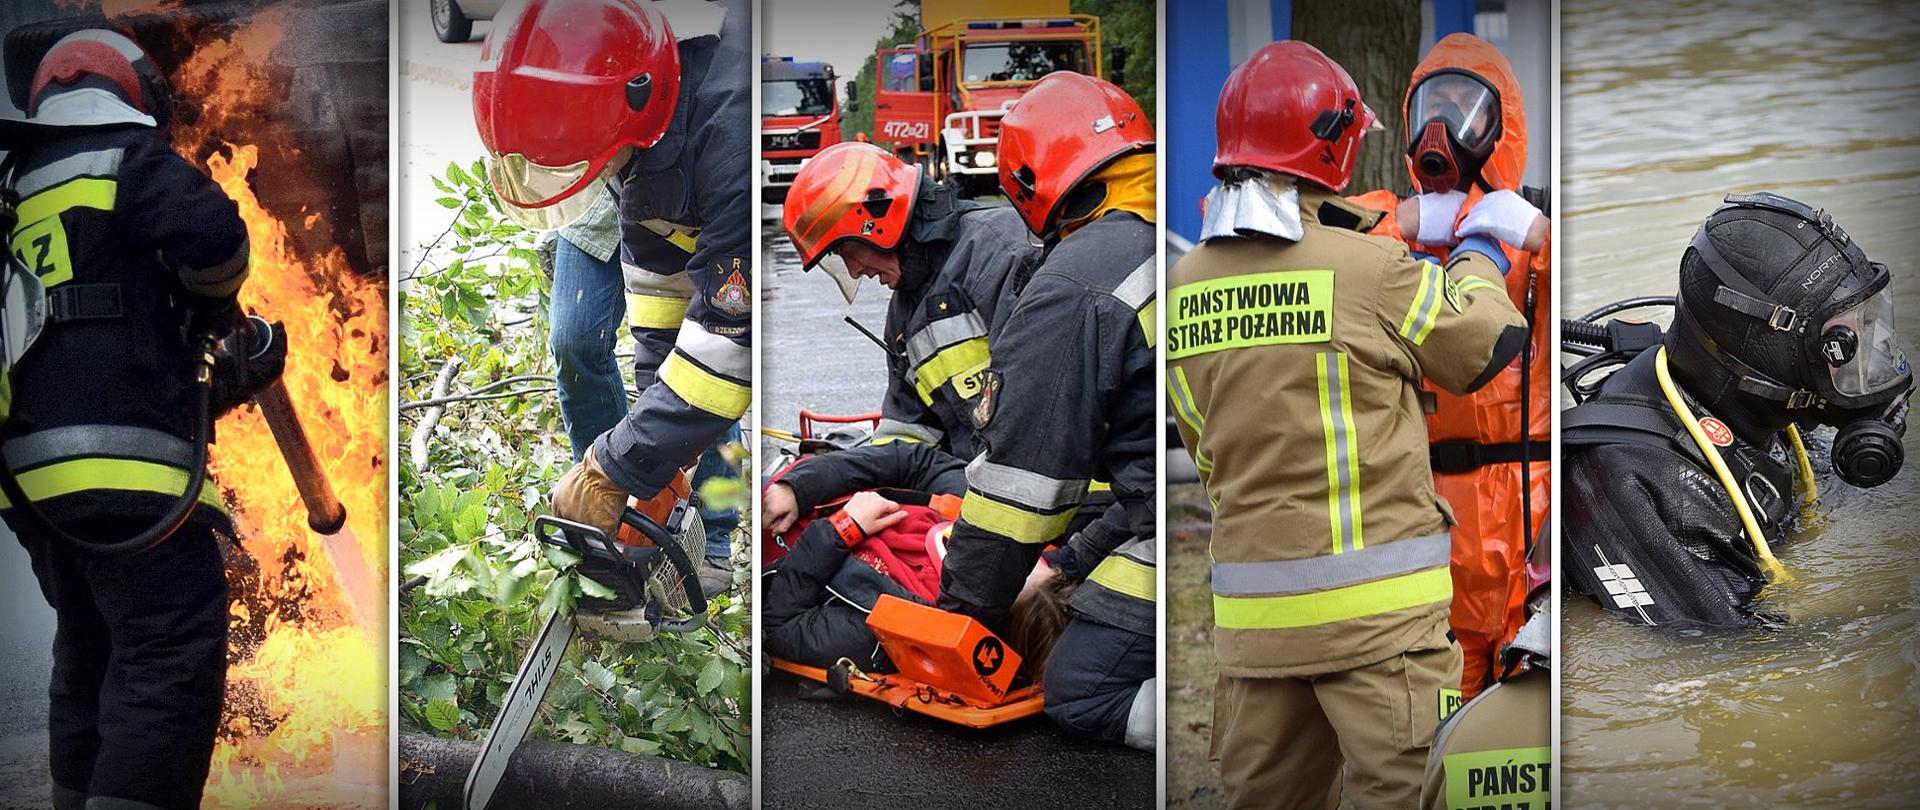 Kolaż pięciu zdjęć przedstawiający strażaków Państwowej Straży Pożarnej podczas różnych działań ratowniczo-gaśniczych. Od lewej strony strażak gasi pożar, strażak przy pomocy piły spalinowej przecina drzewo, dwóch strażaków klęczących na jezdni udziela pomocy osobie poszkodowanej, która leży na desce ortopedycznej, strażak Państwowej Straży Pożarnej pomaga zakładać strój ochrony przeciwchemicznej drugiemu funkcjonariuszowi, funkcjonariusz ubrany w strój płetwonurka zanurzony jest w wodzie. Zdjęcie zbiorowe, ilustracyjne.